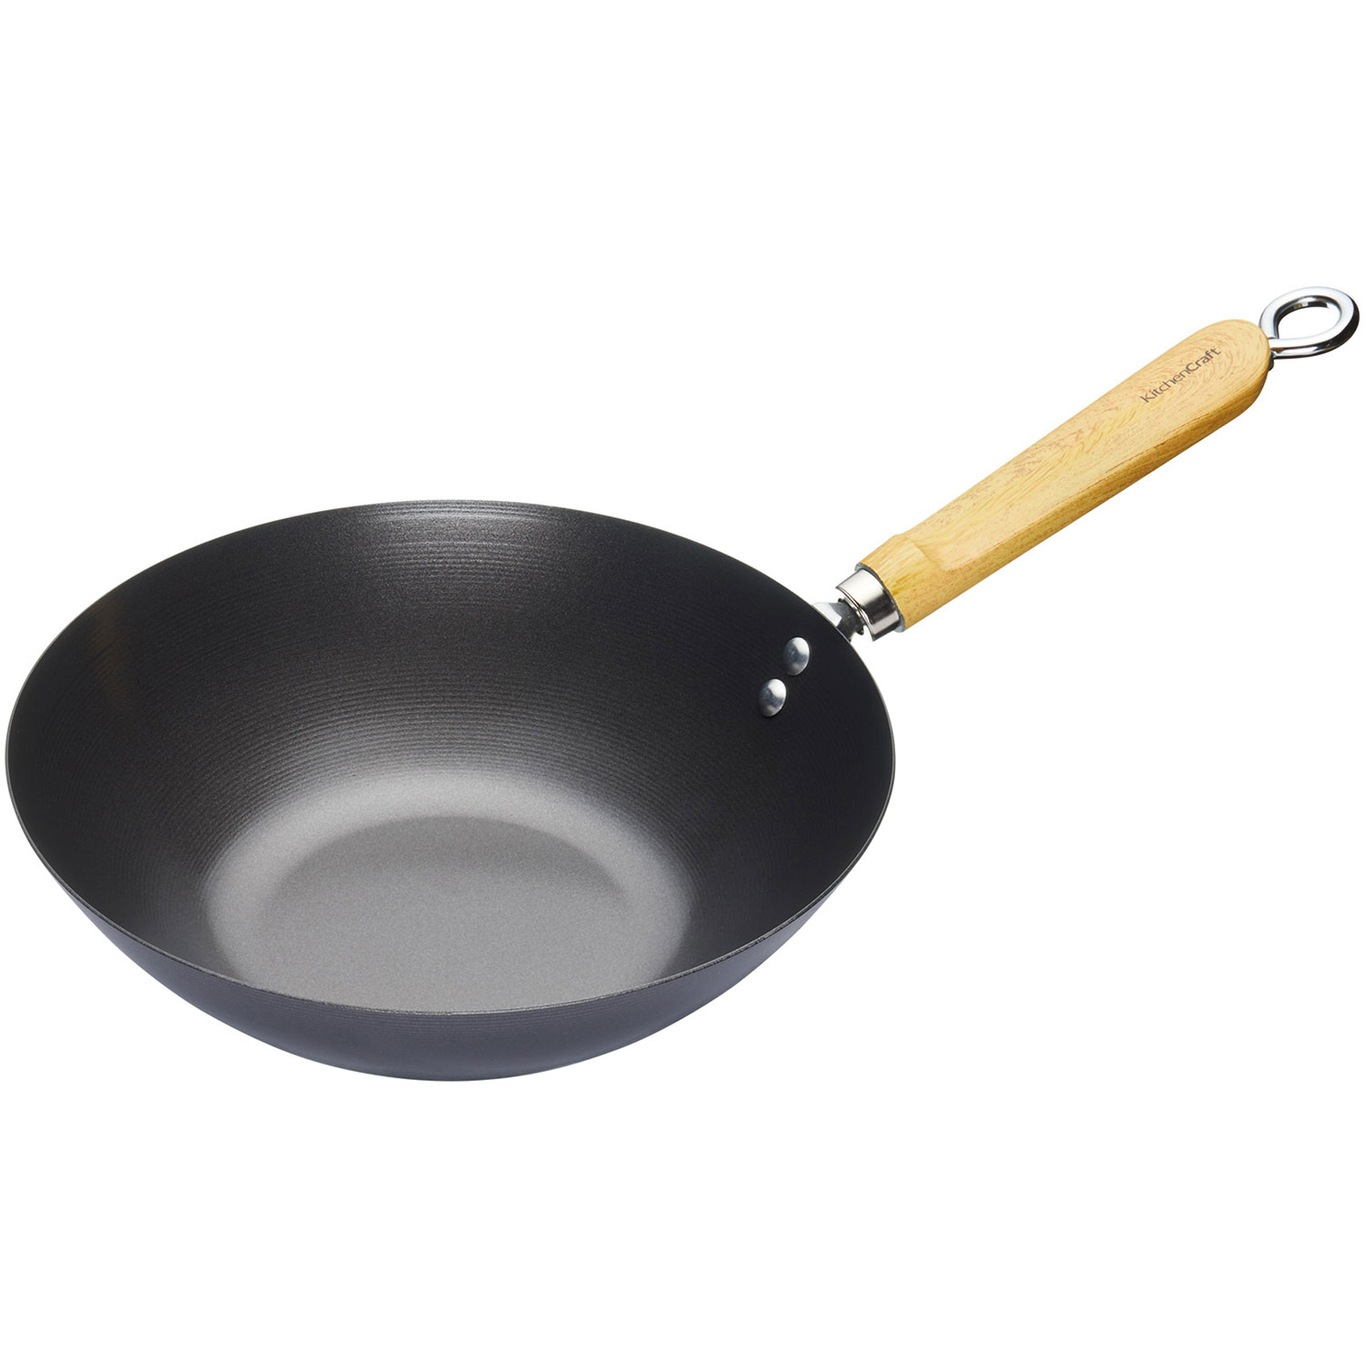 https://royaldesign.com/image/2/kitchen-craft-worldofflavours-wood-hand-steel-nonstick-wok-25cm-0?w=800&quality=80